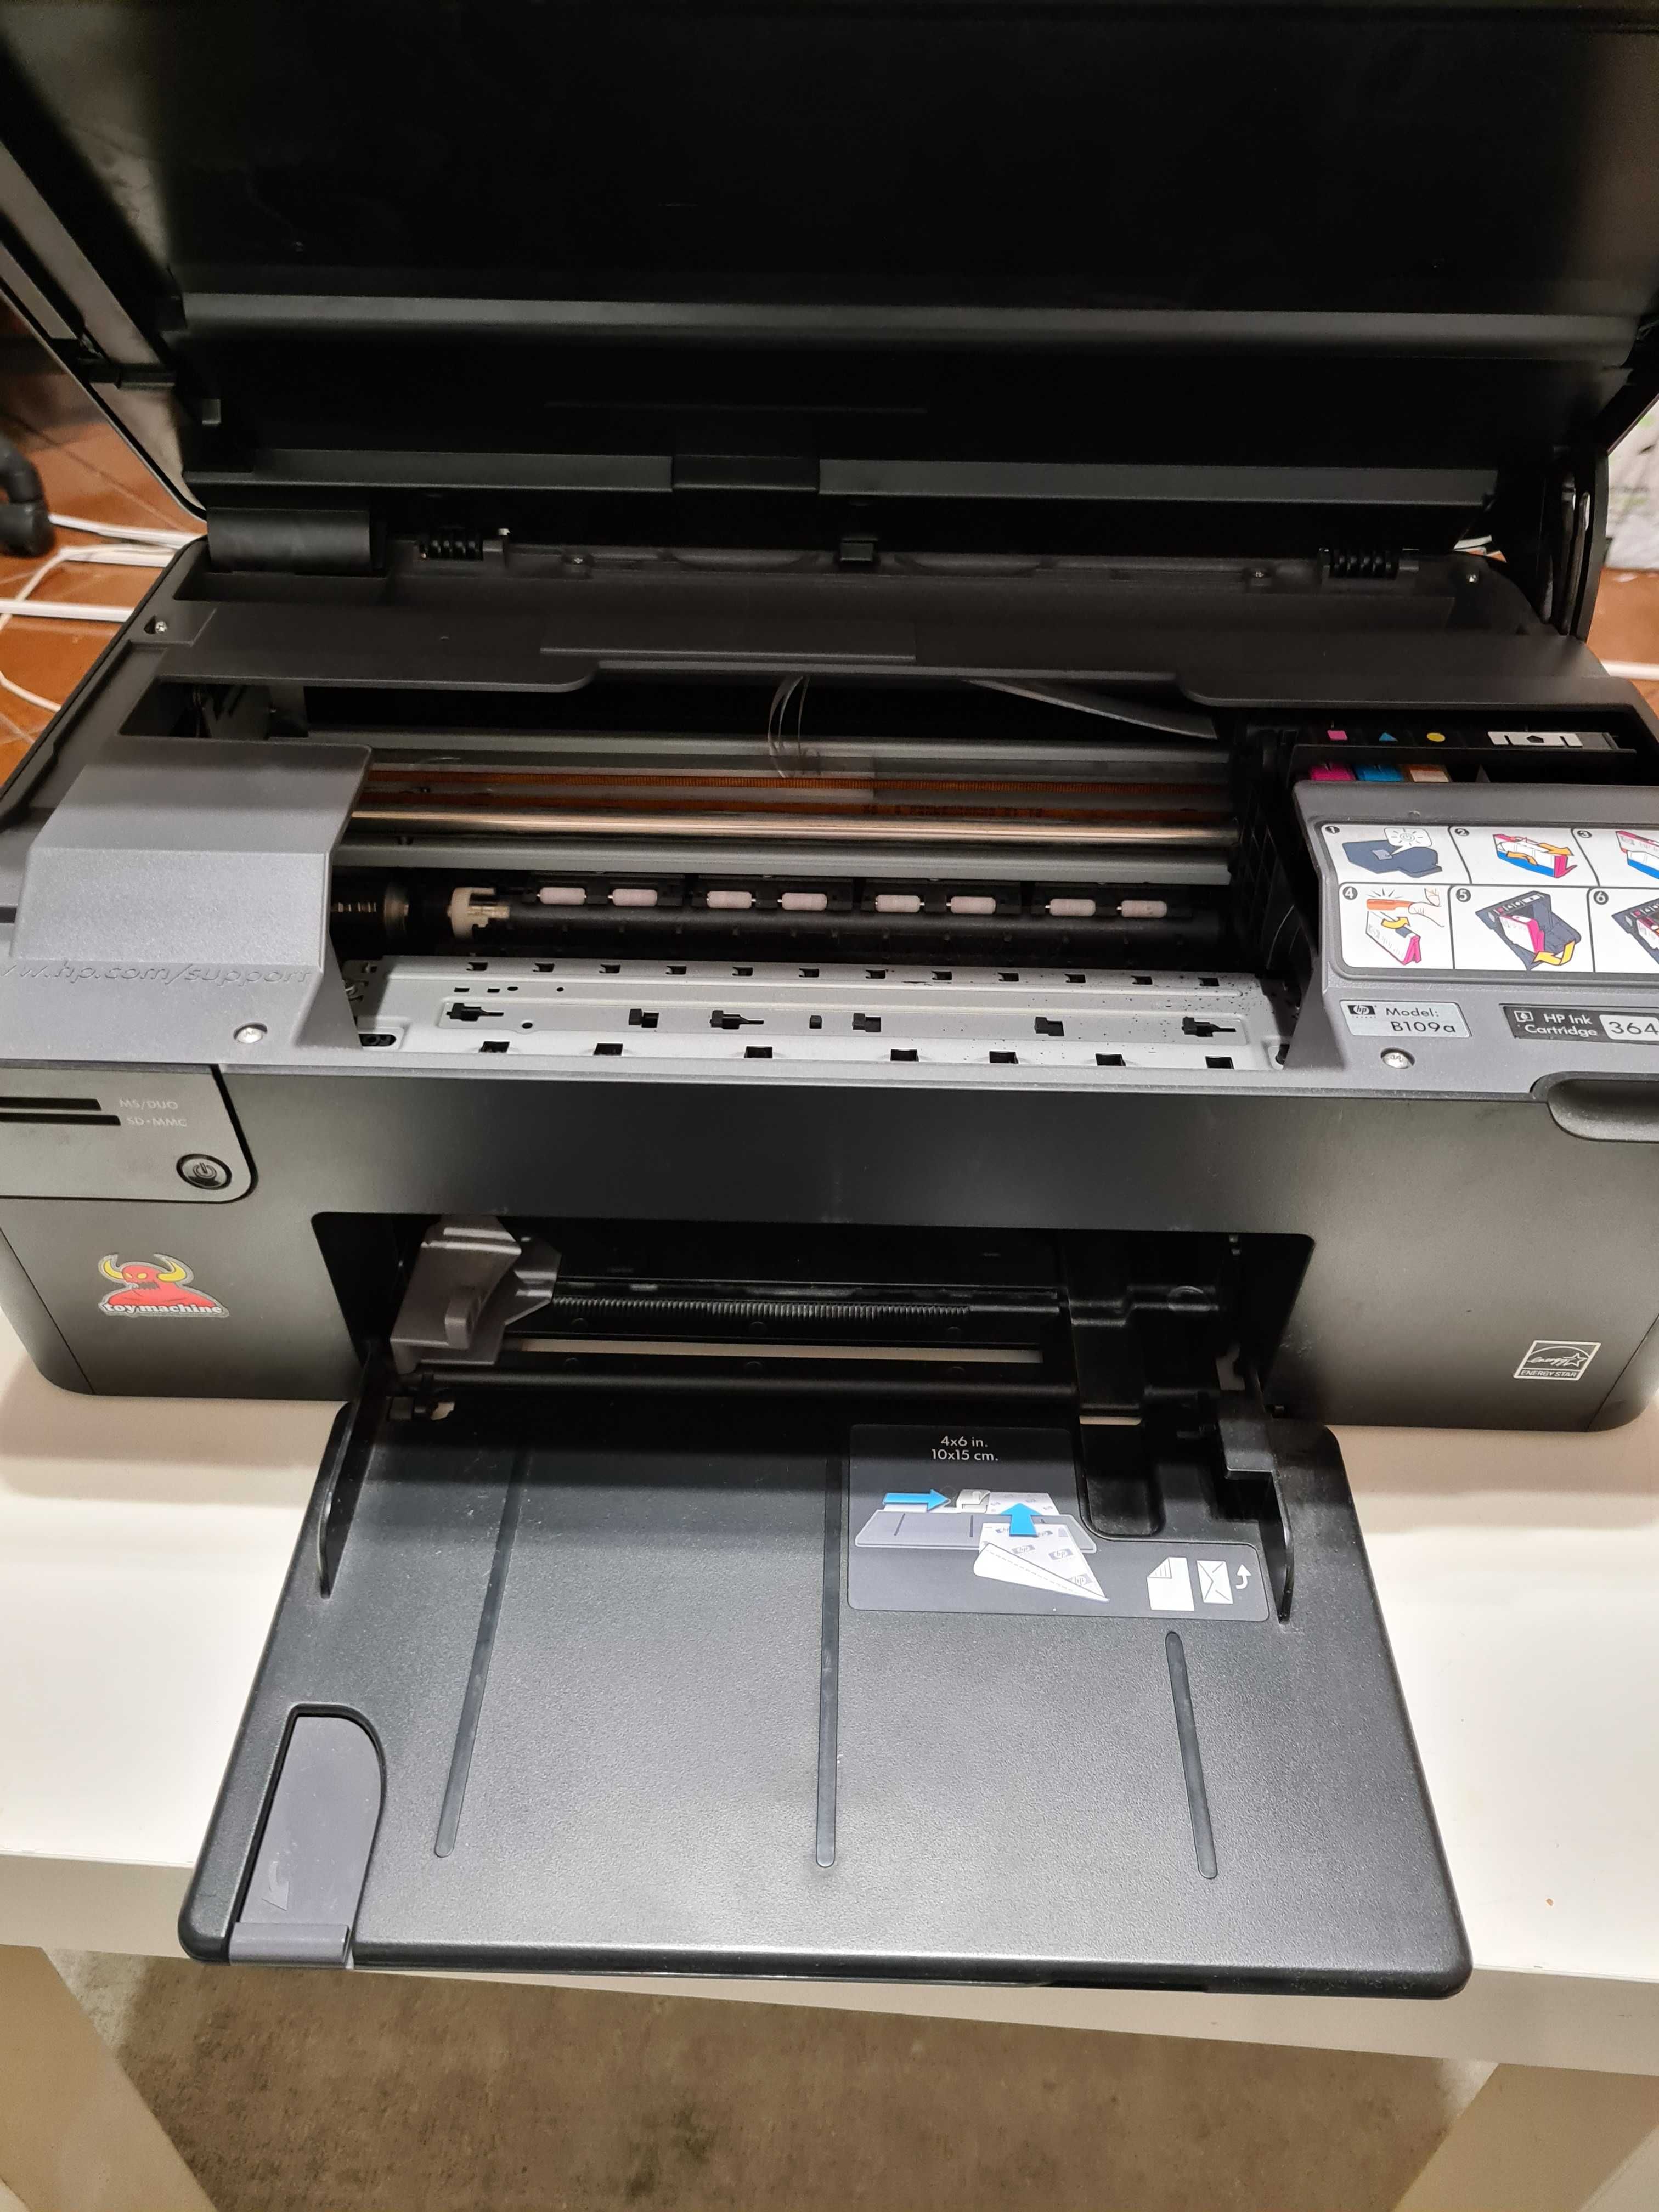 Impressora HP Photosmart All-in-One - B109a